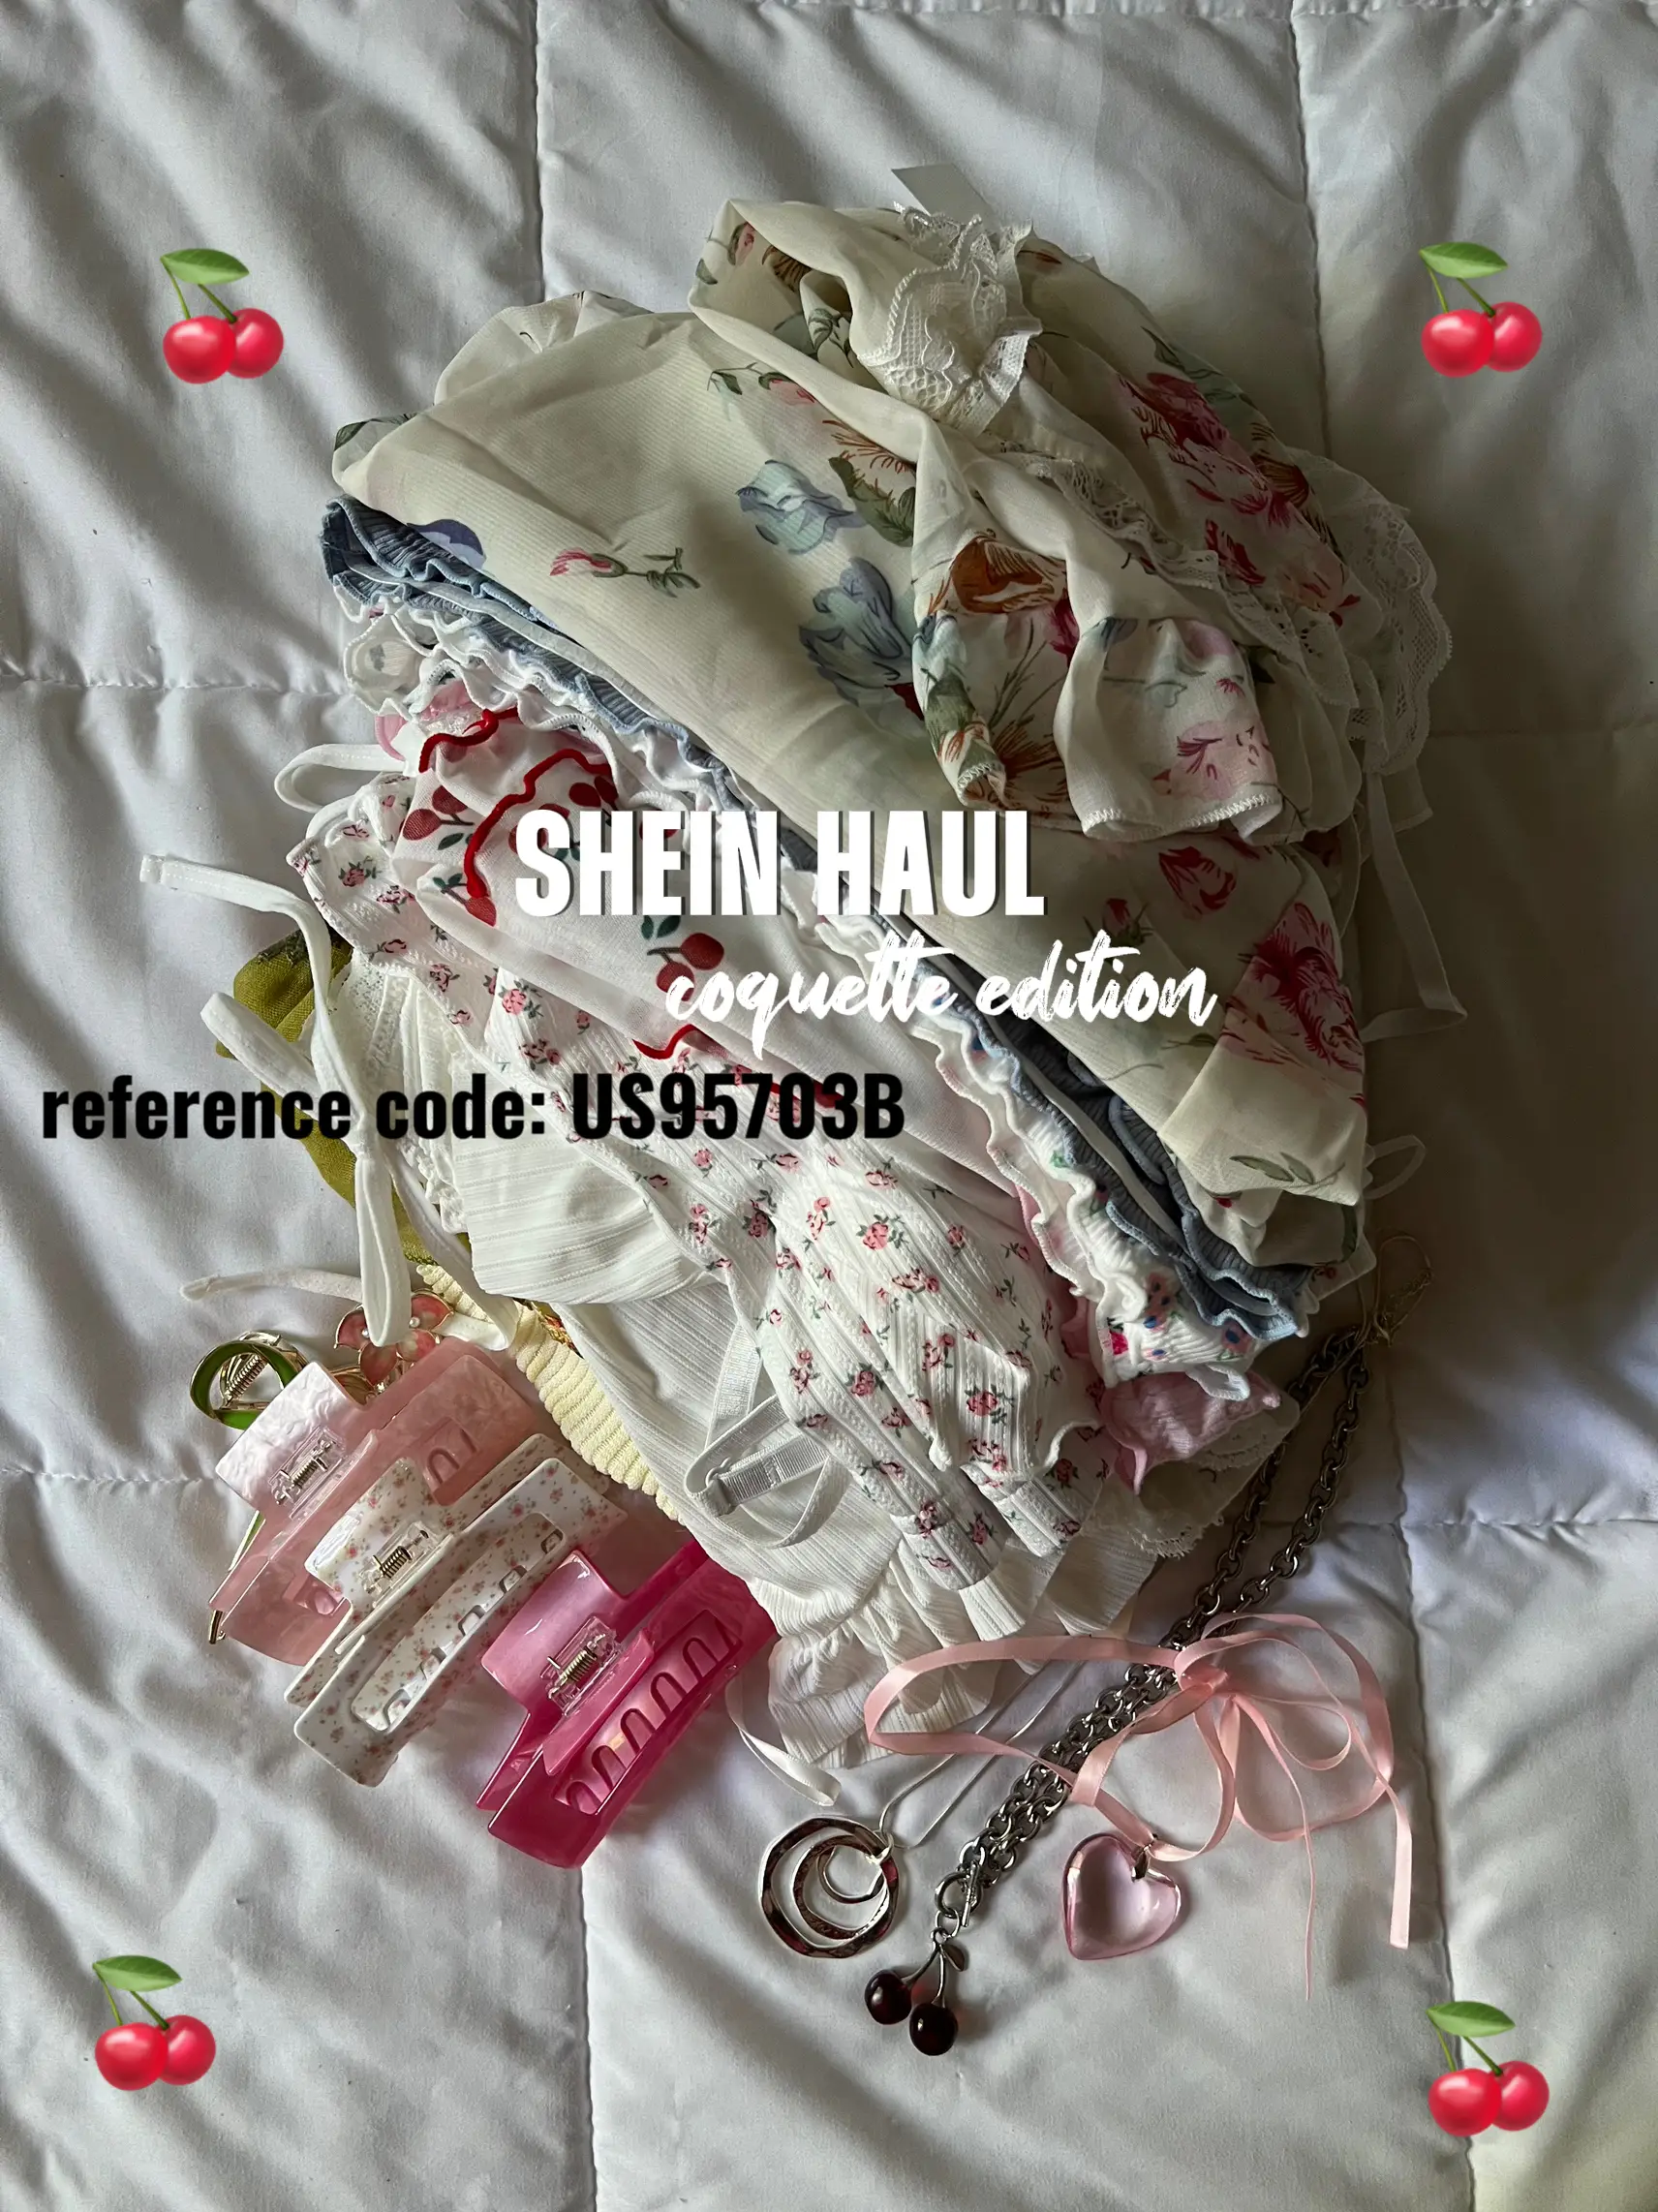 🥰 #shein #sheingals #sheingals #sheinhaul #shein #sheinhaul #sheingals # shein #sheingals #sheinofficial